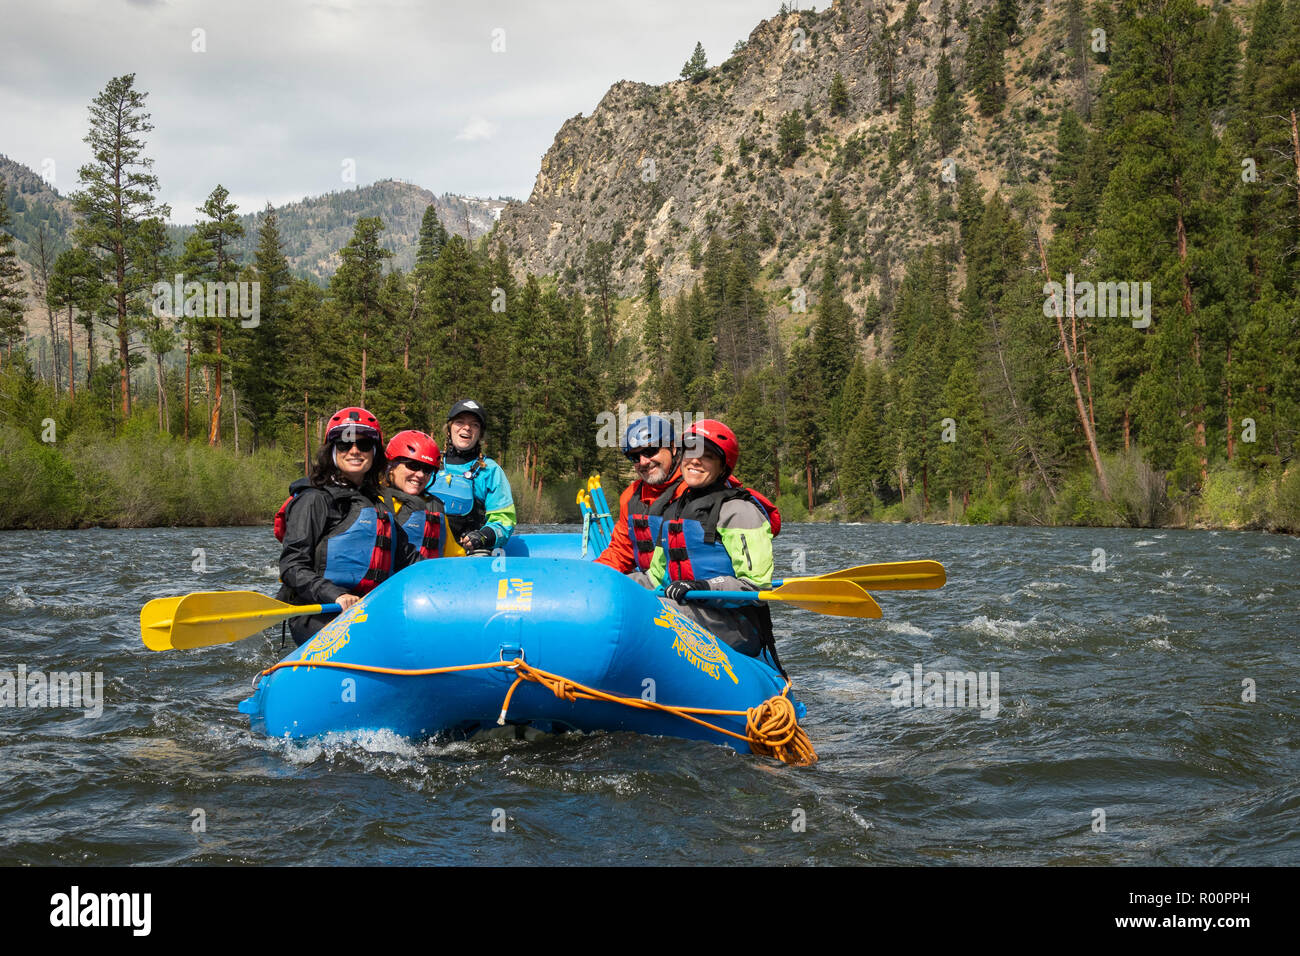 Rafting la forcella centrale Salmon River, Idaho con lontane avventure. Guida: Daniela Stokes. Foto Stock